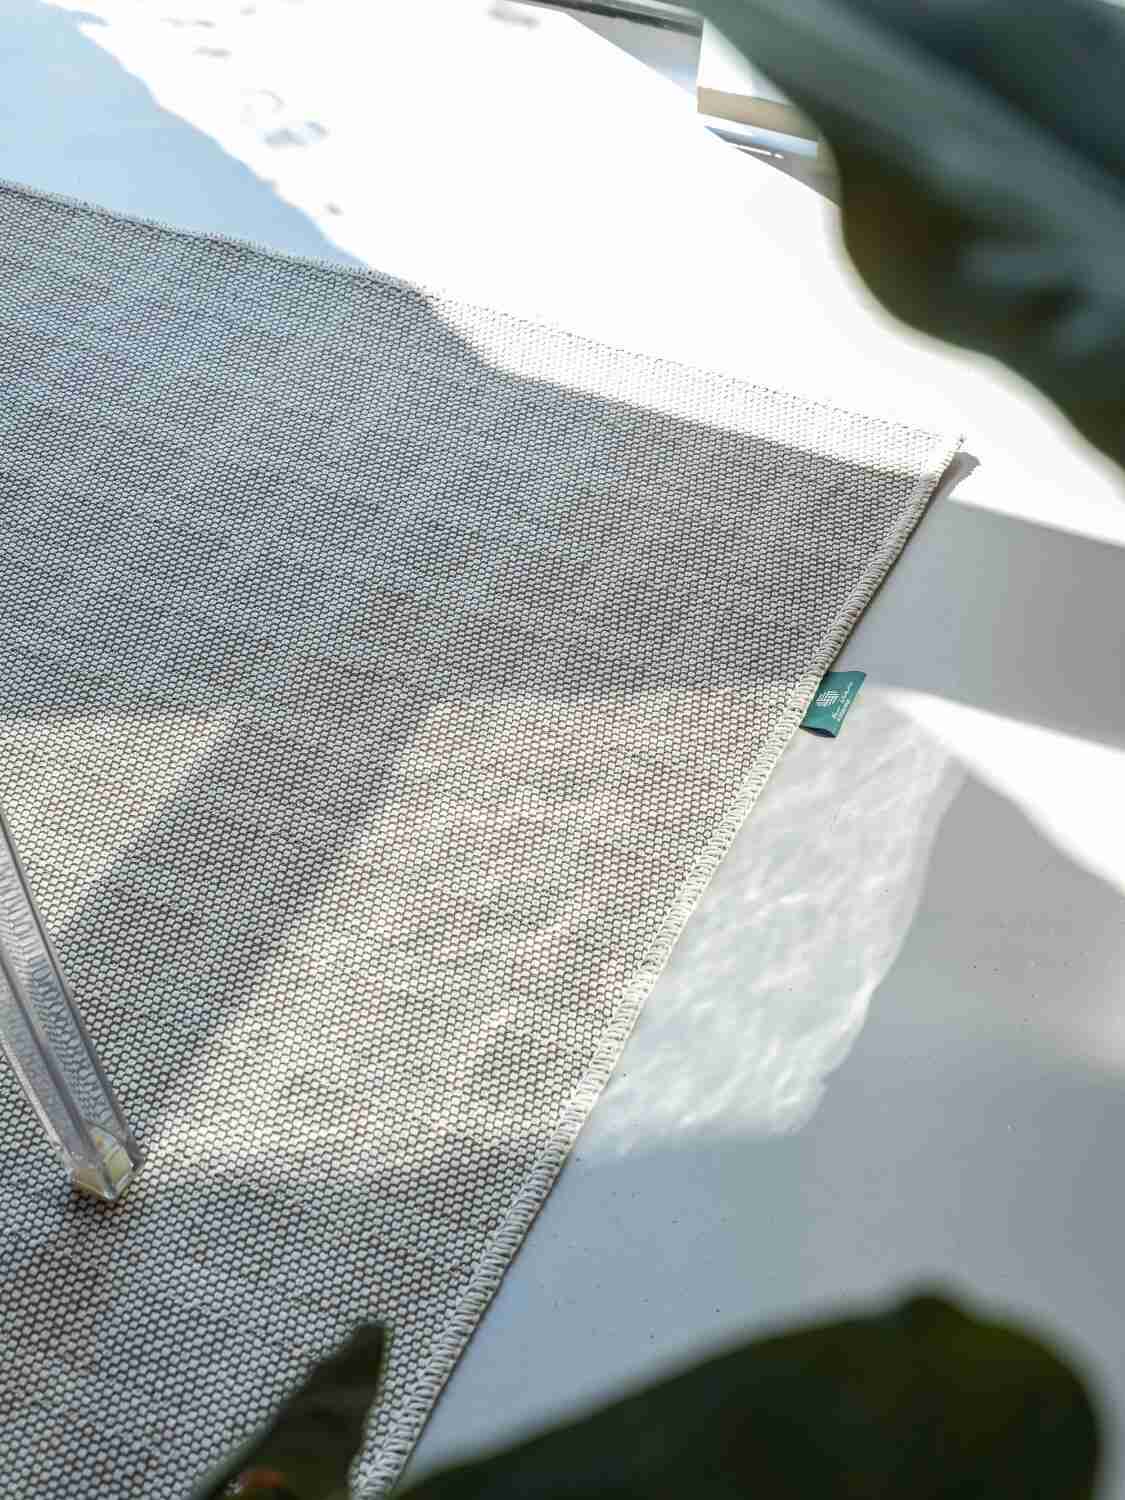 Rivoluzioni circolari: la collaborazione di successo tra Aquafil e New Weave nella creazione di una collezione di tappeti “R2R”